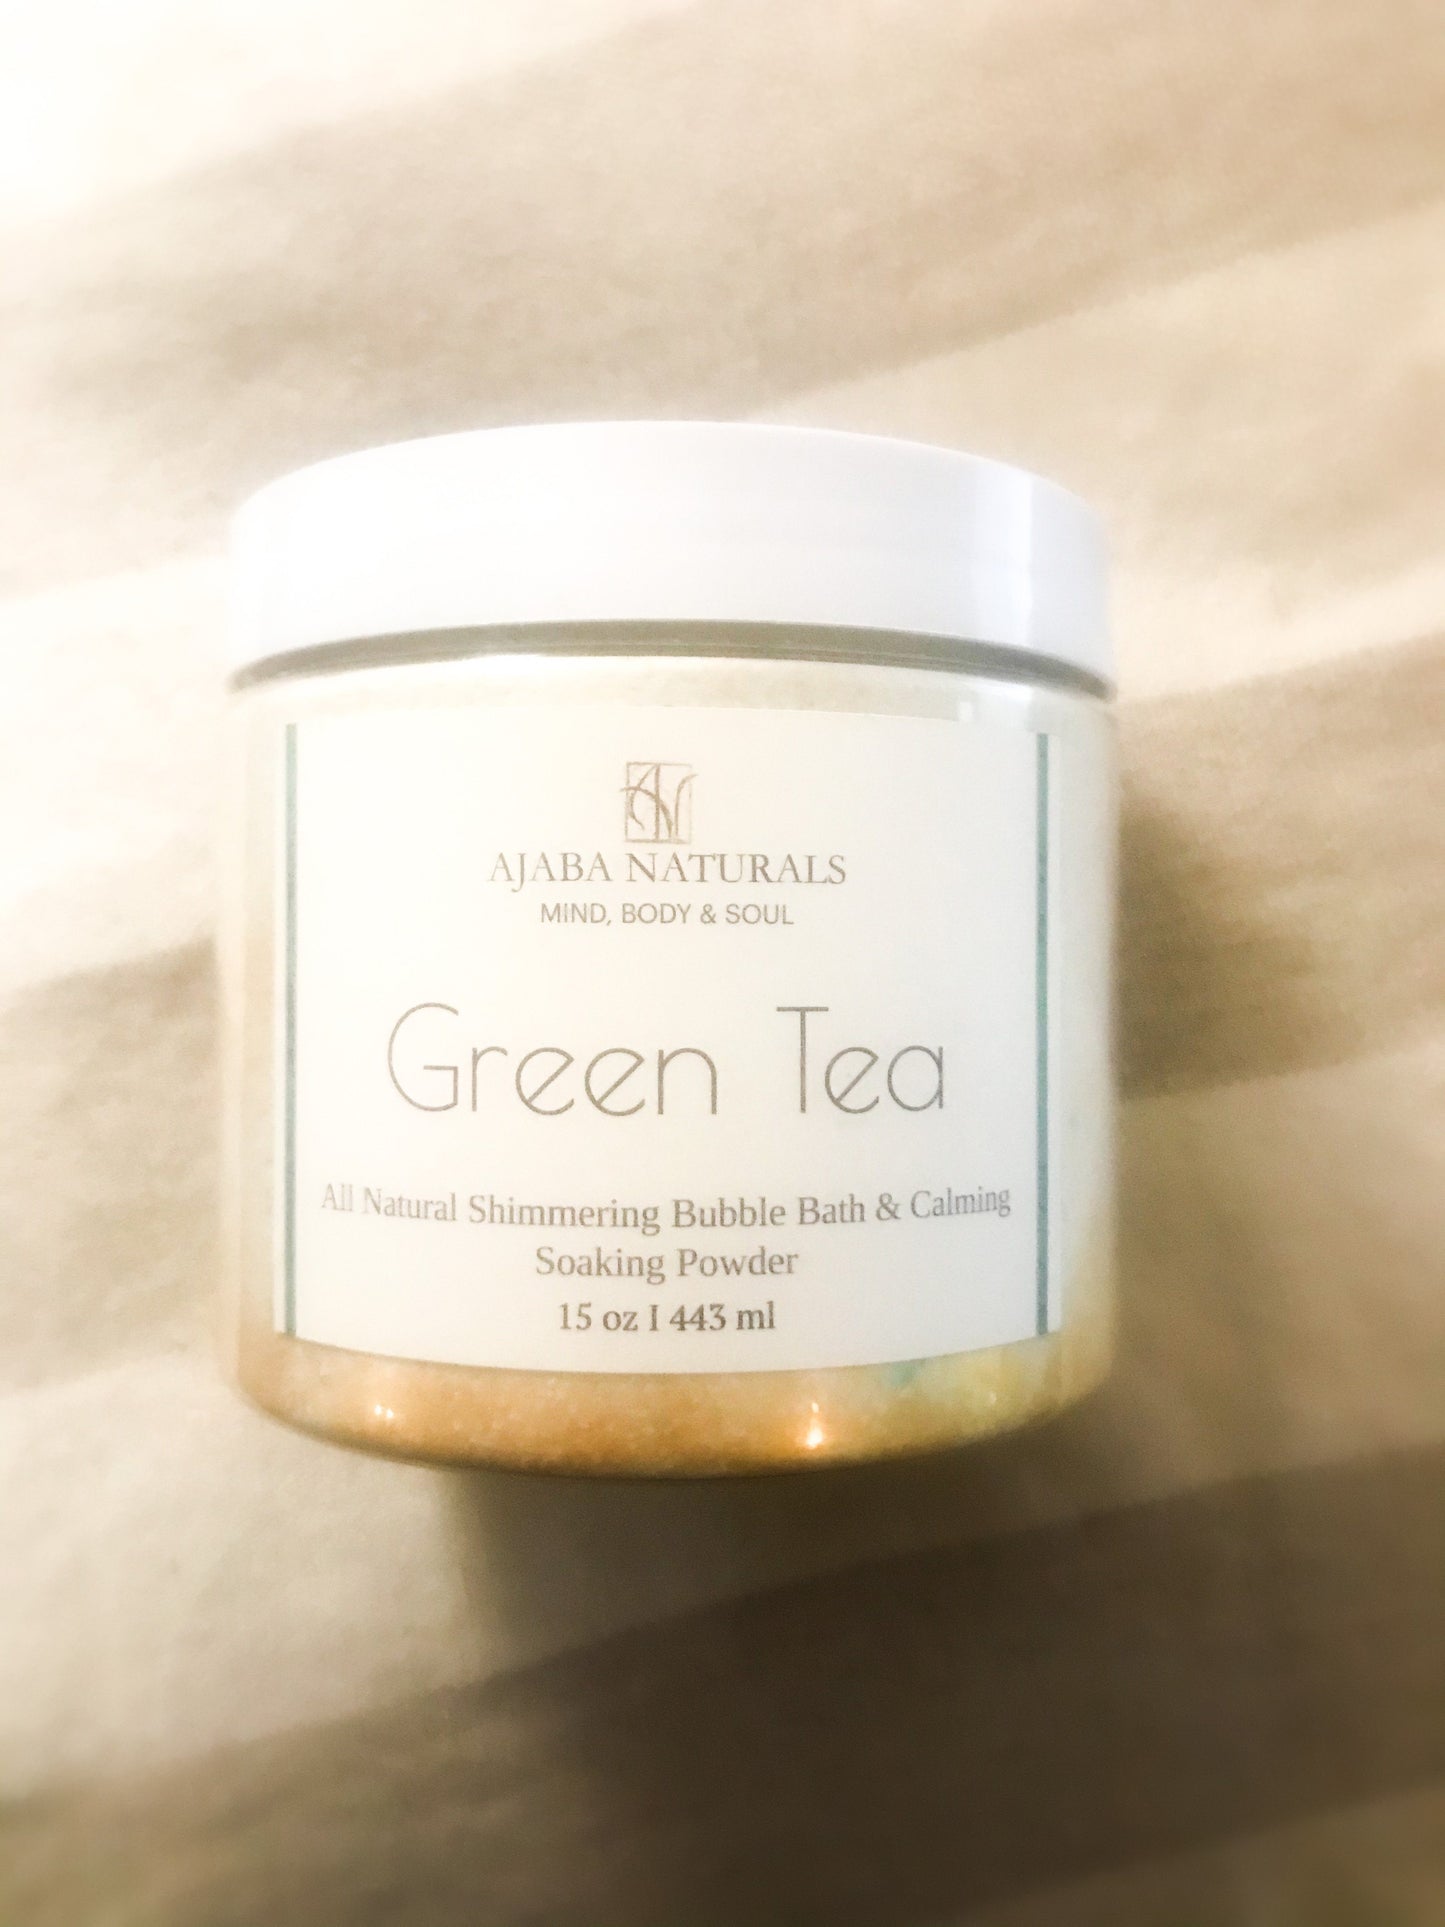 All Natural Green Tea Shimmering Bubble Bath and Calming Soak Powder Bath Soak AJABA NATURALS® 